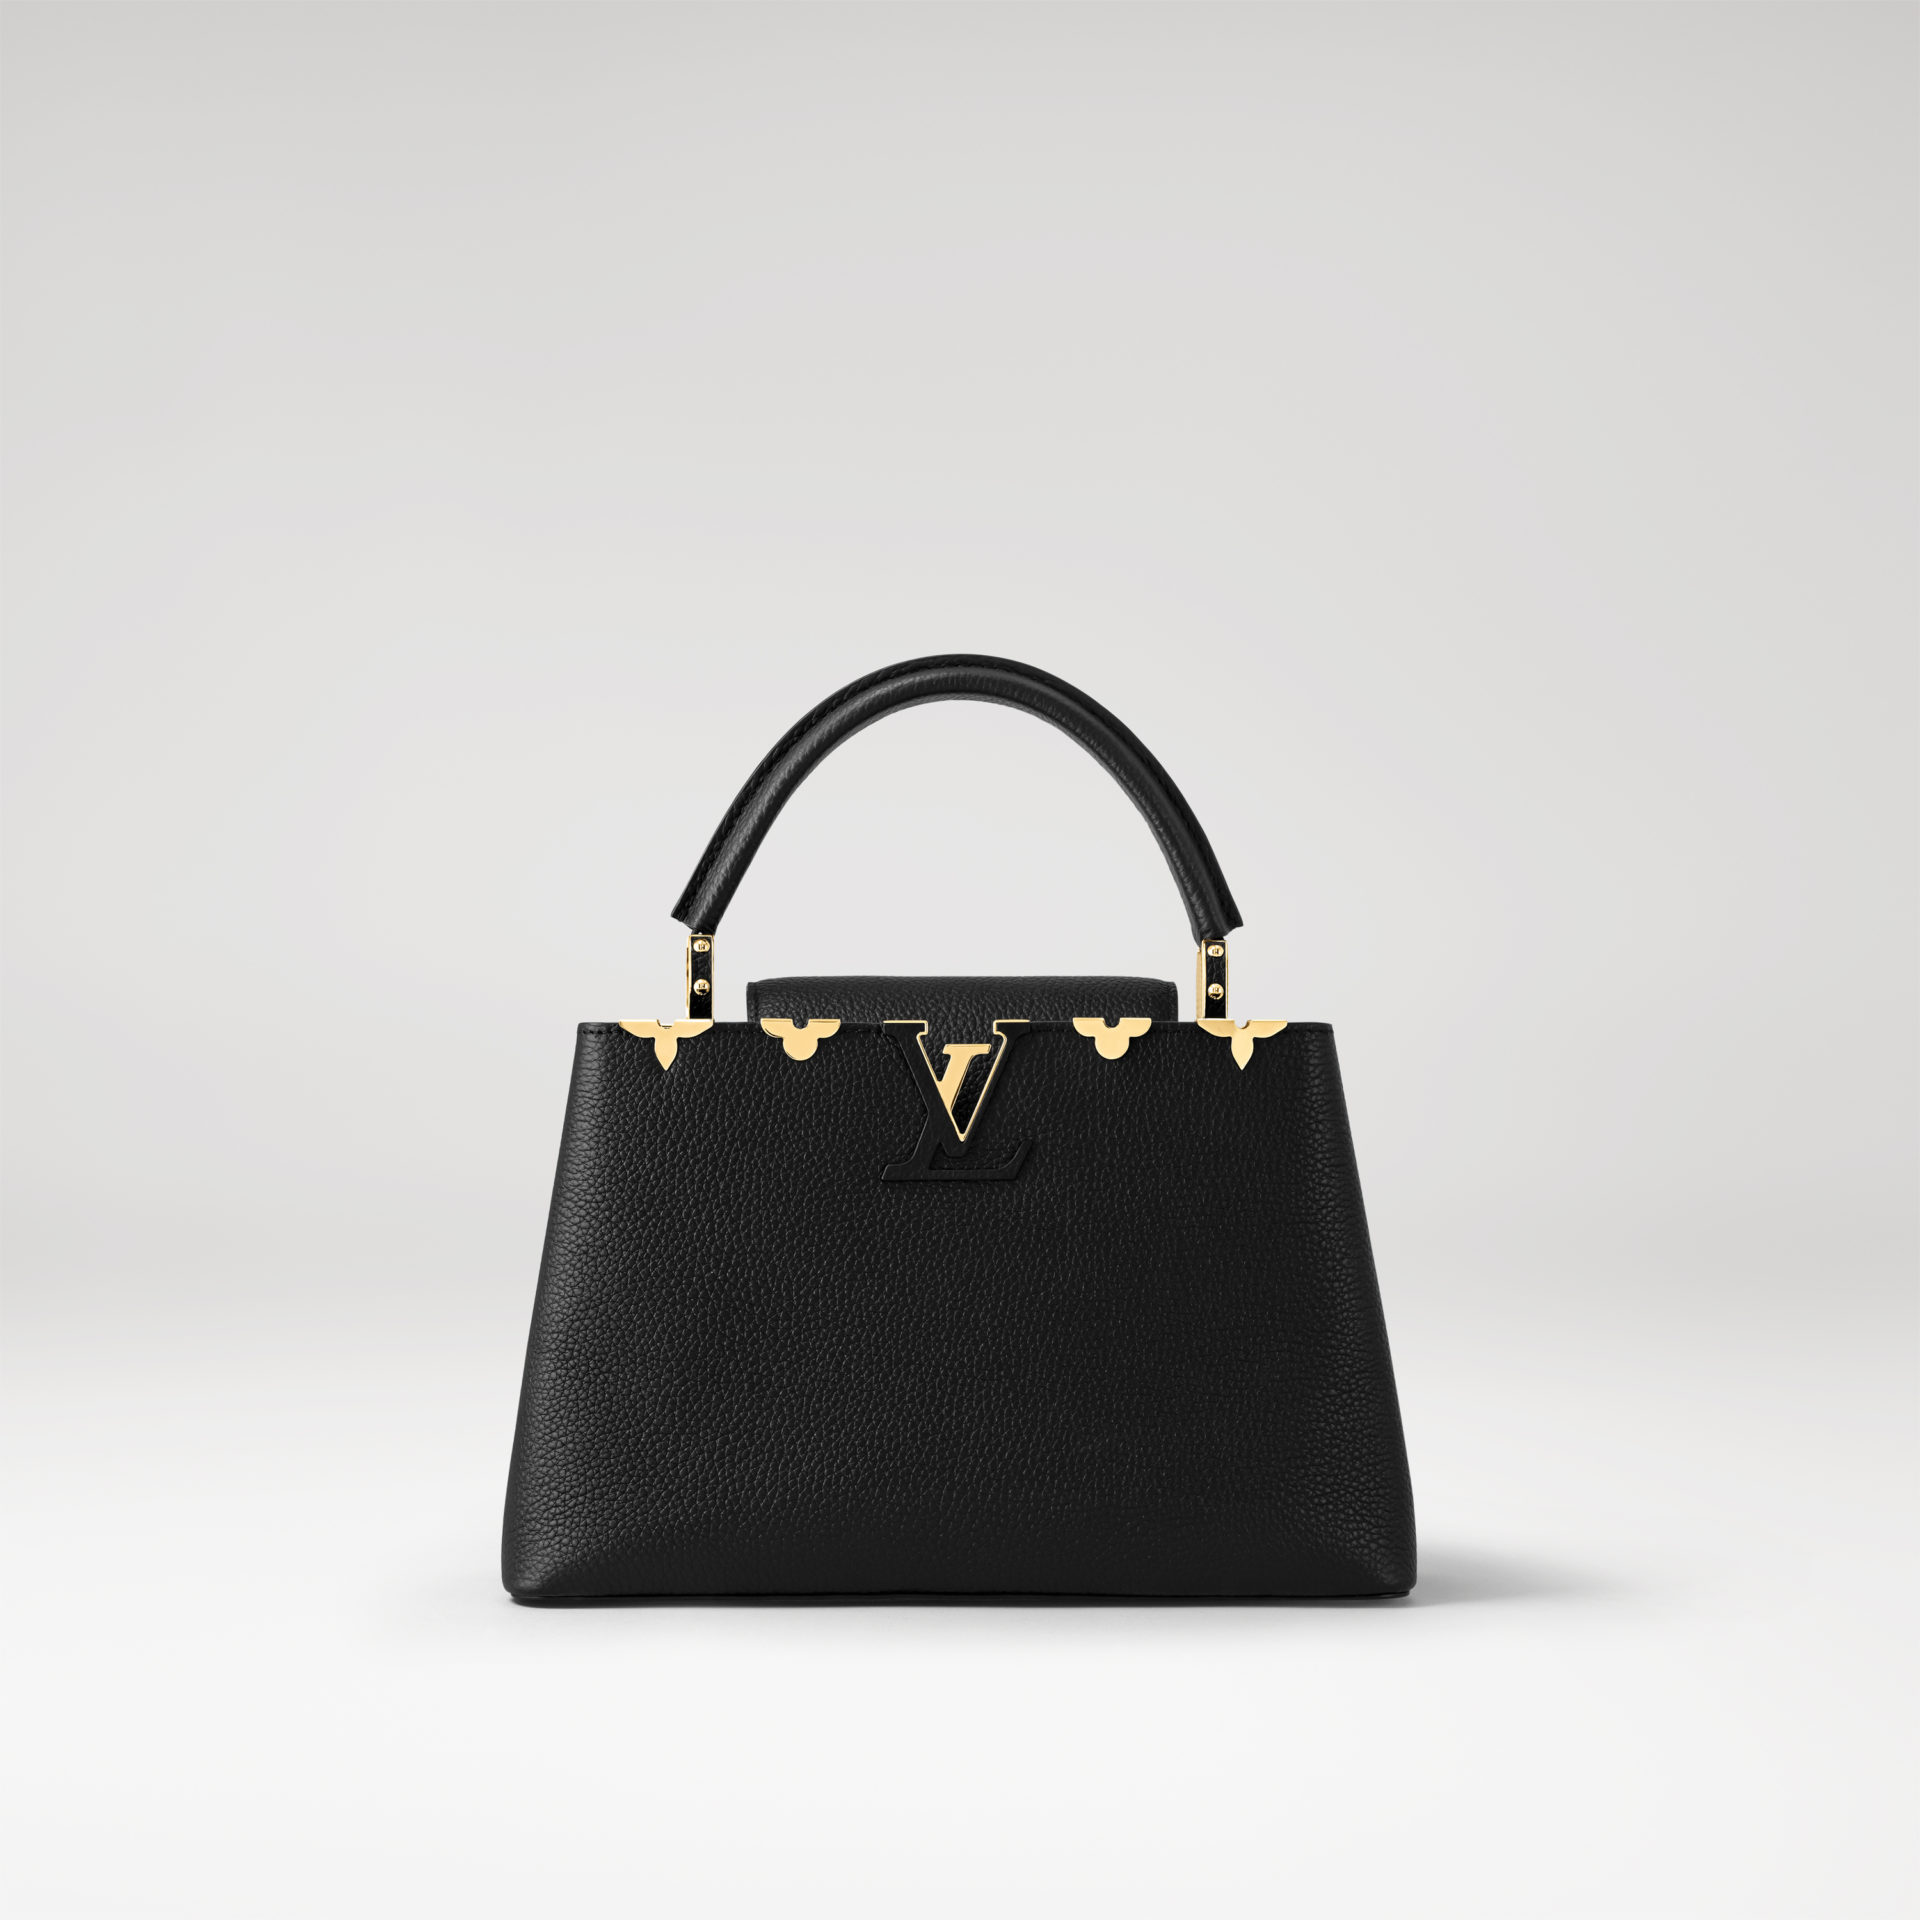 Культовая сумка Louis Vuitton Capucines — воплощение элегантности, стиля и истории французского Дома